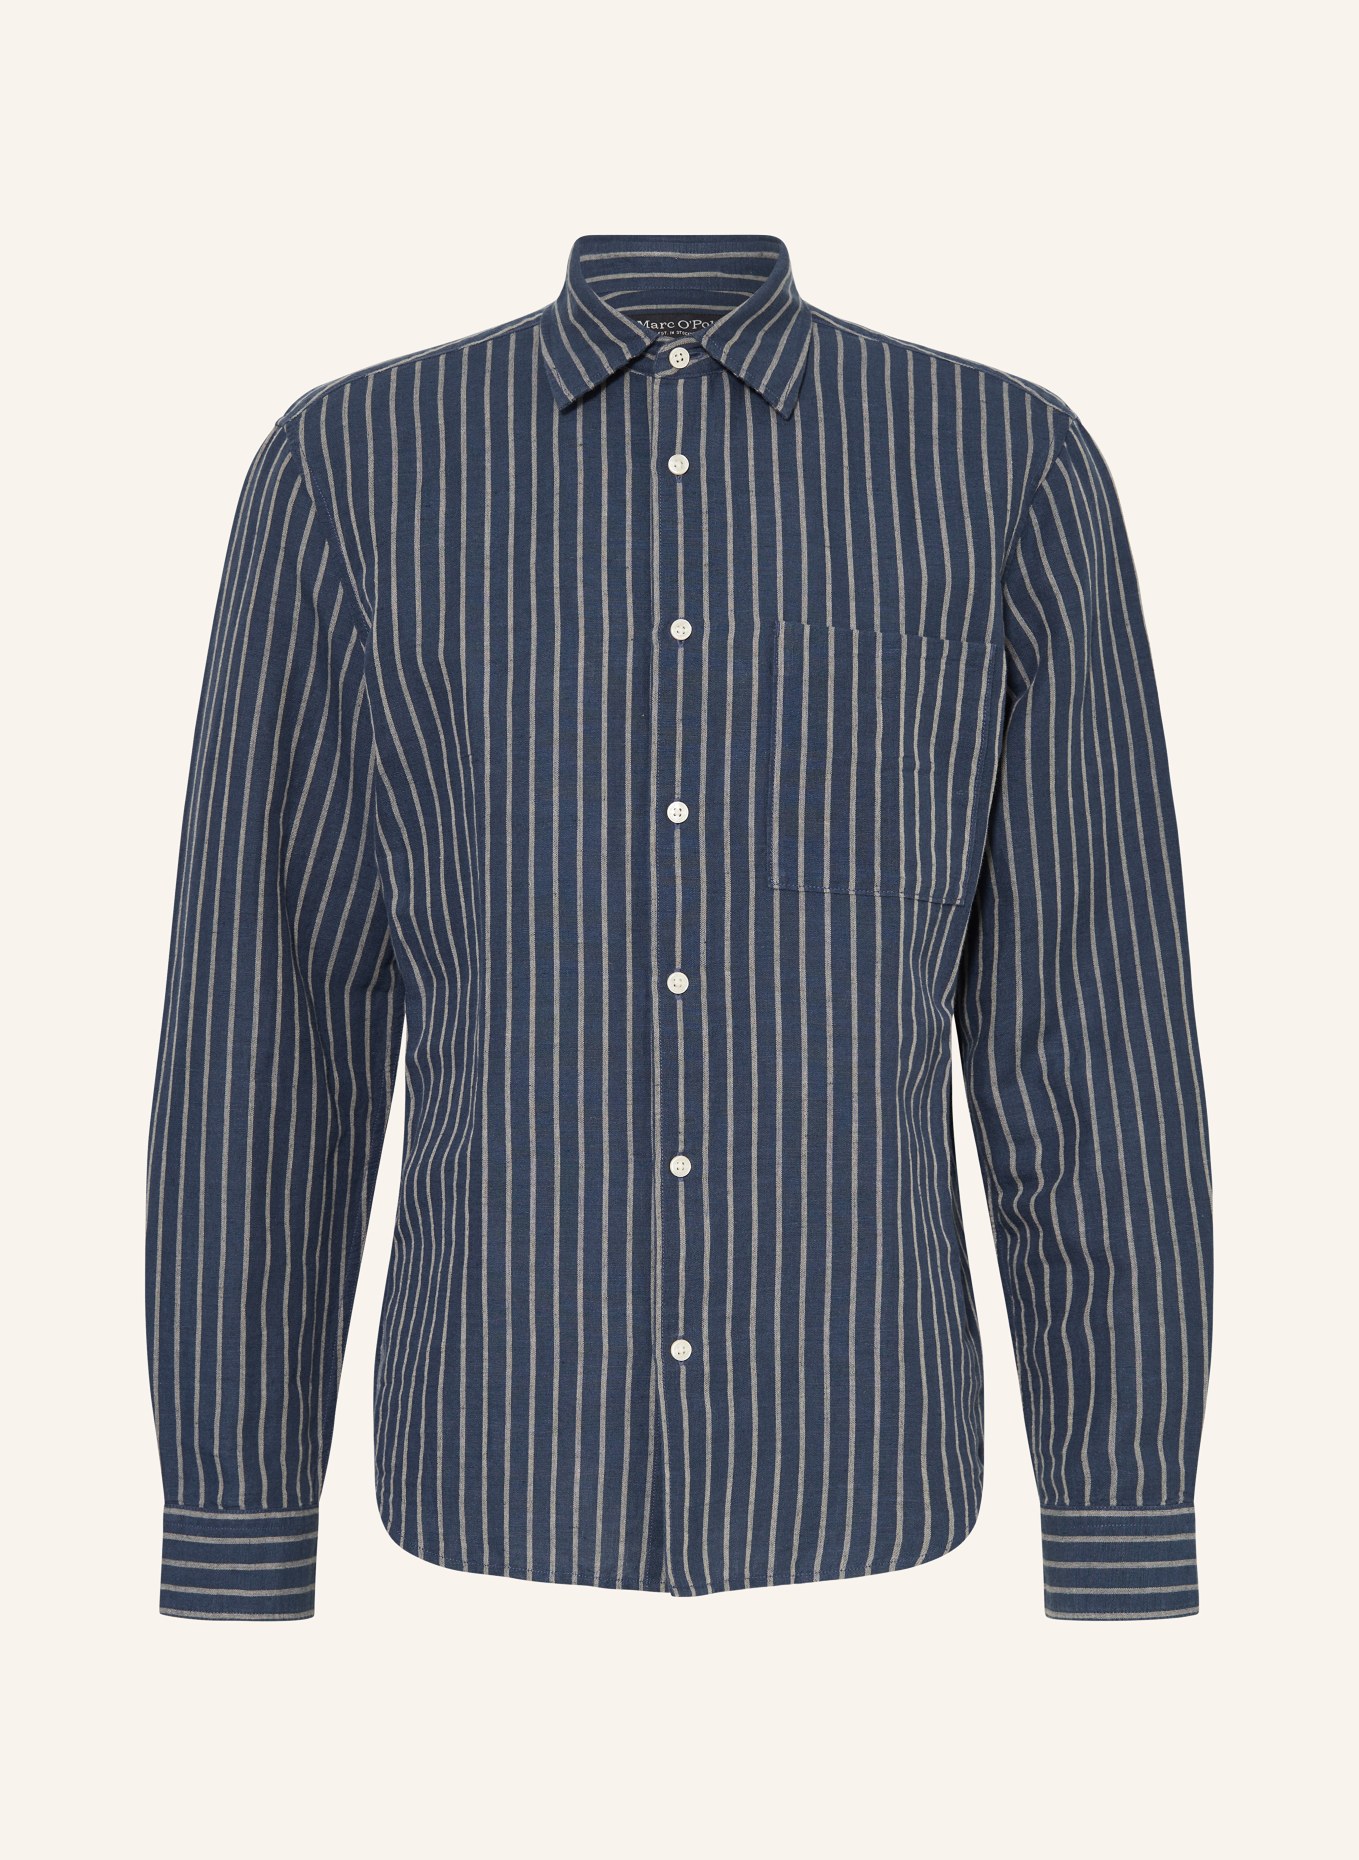 Marc O'Polo Shirt regular fit, Color: DARK BLUE/ CREAM (Image 1)